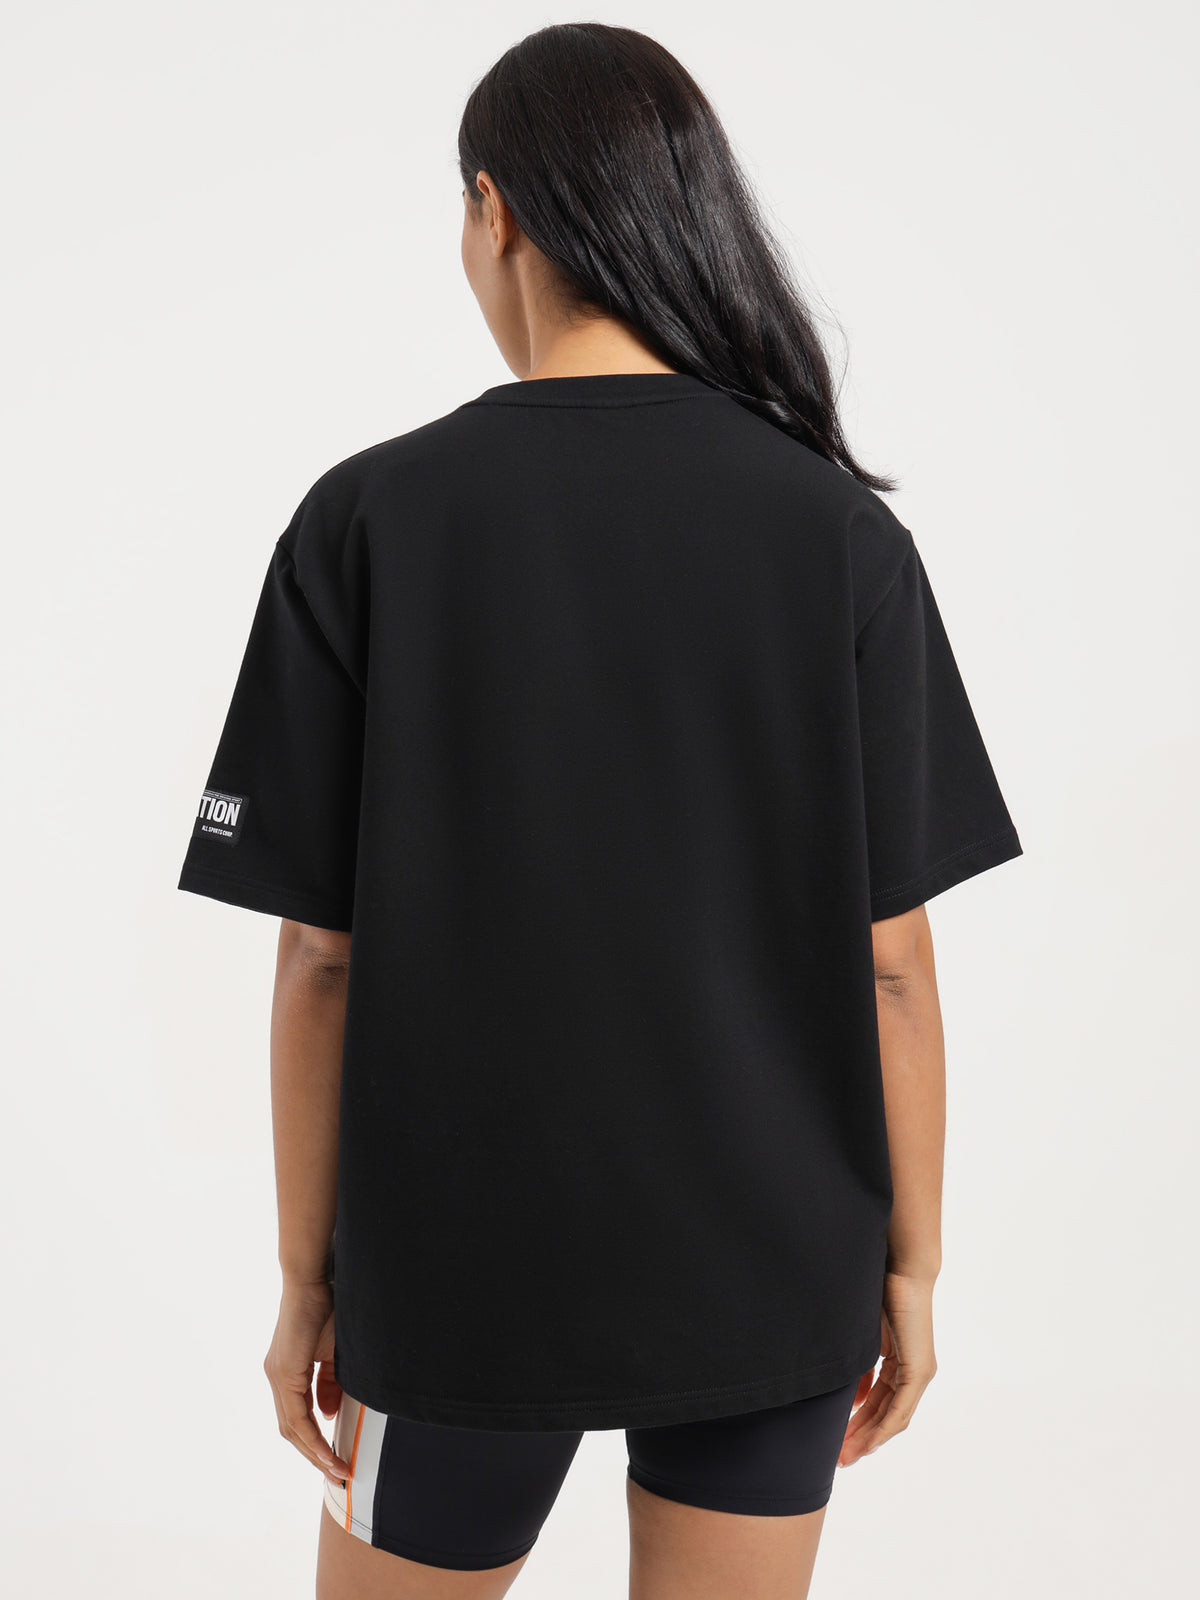 Capacity T-Shirt in Black